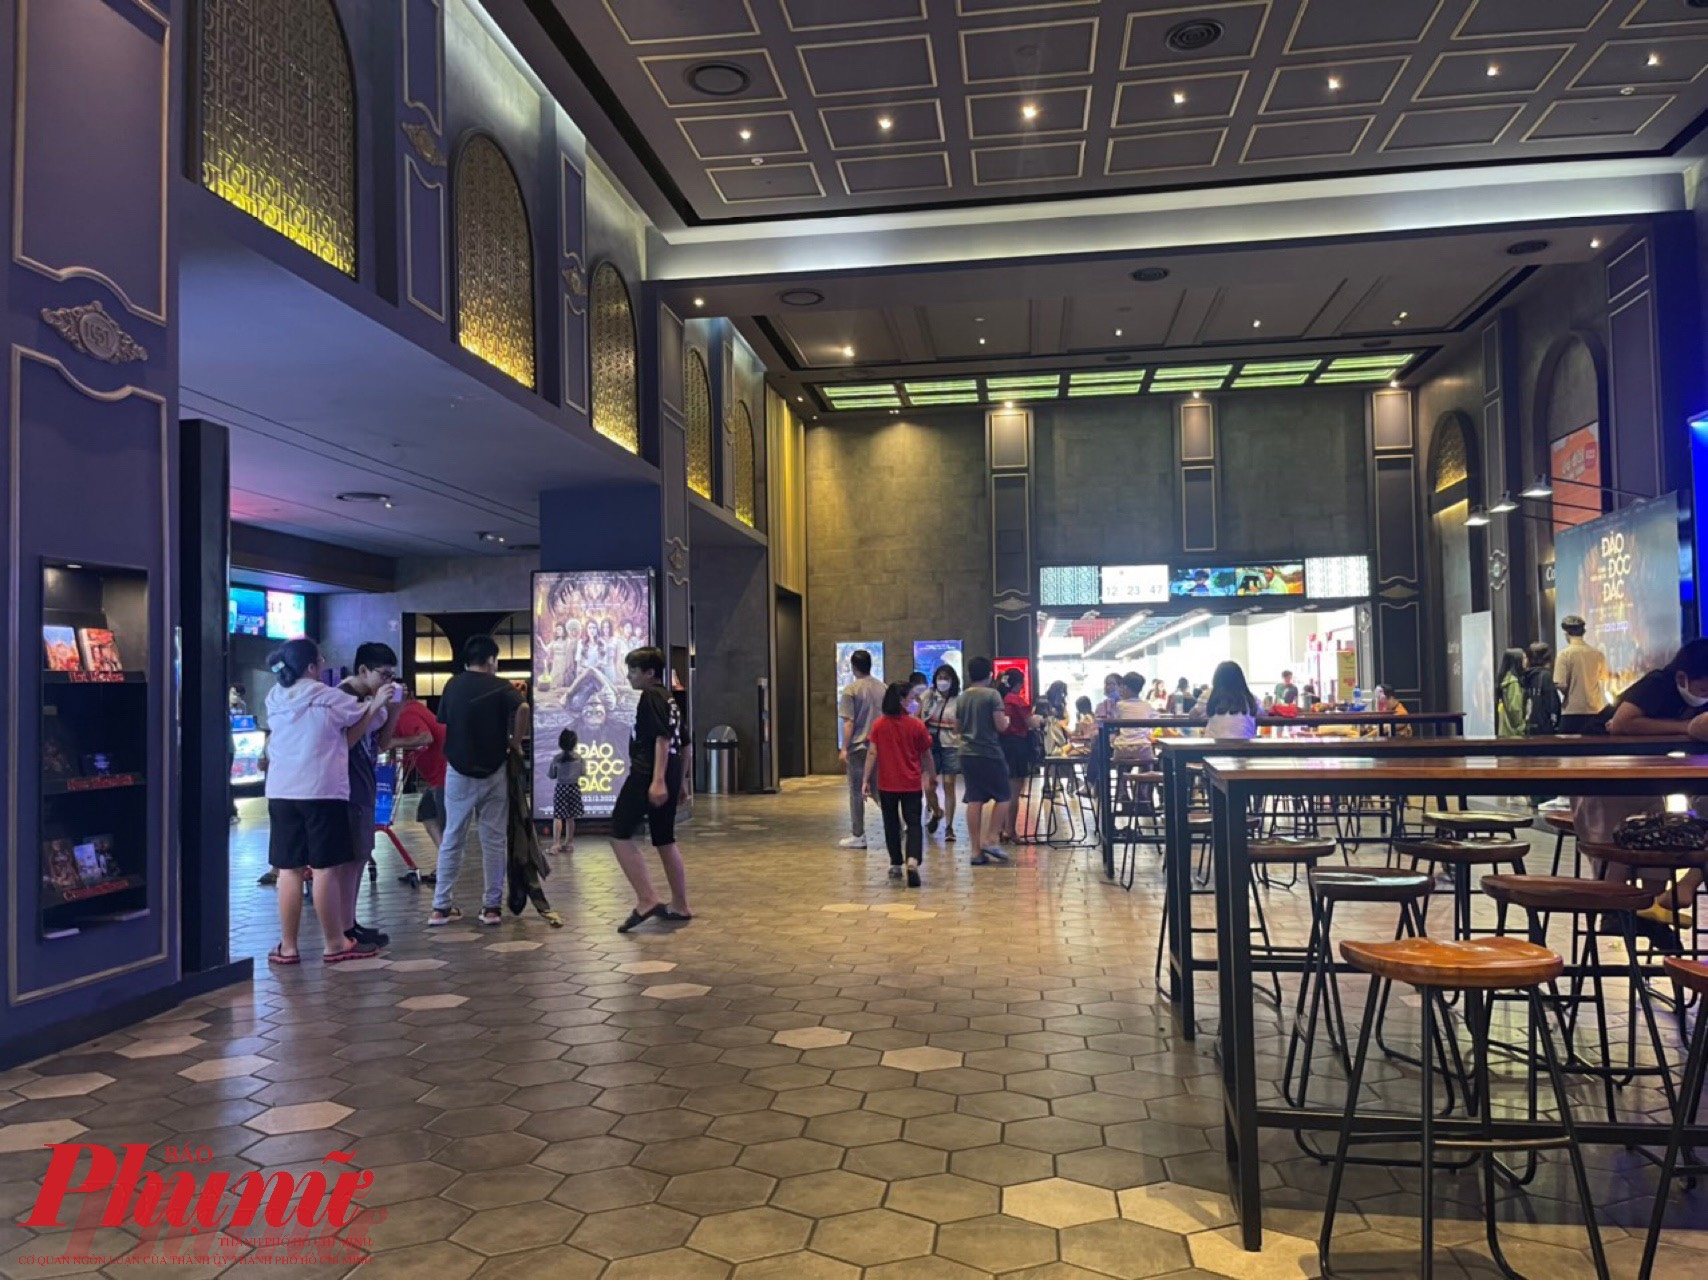 Rạp phim Lotte Cinema (quận Gò Vấp) vắng khách hơn dịp cuối tuần thông thường, một phần do các suất phim được chiếu dày đặc hơn, cách nhau 1 giờ có suất chiếu nên khách rãi đều các xuất.